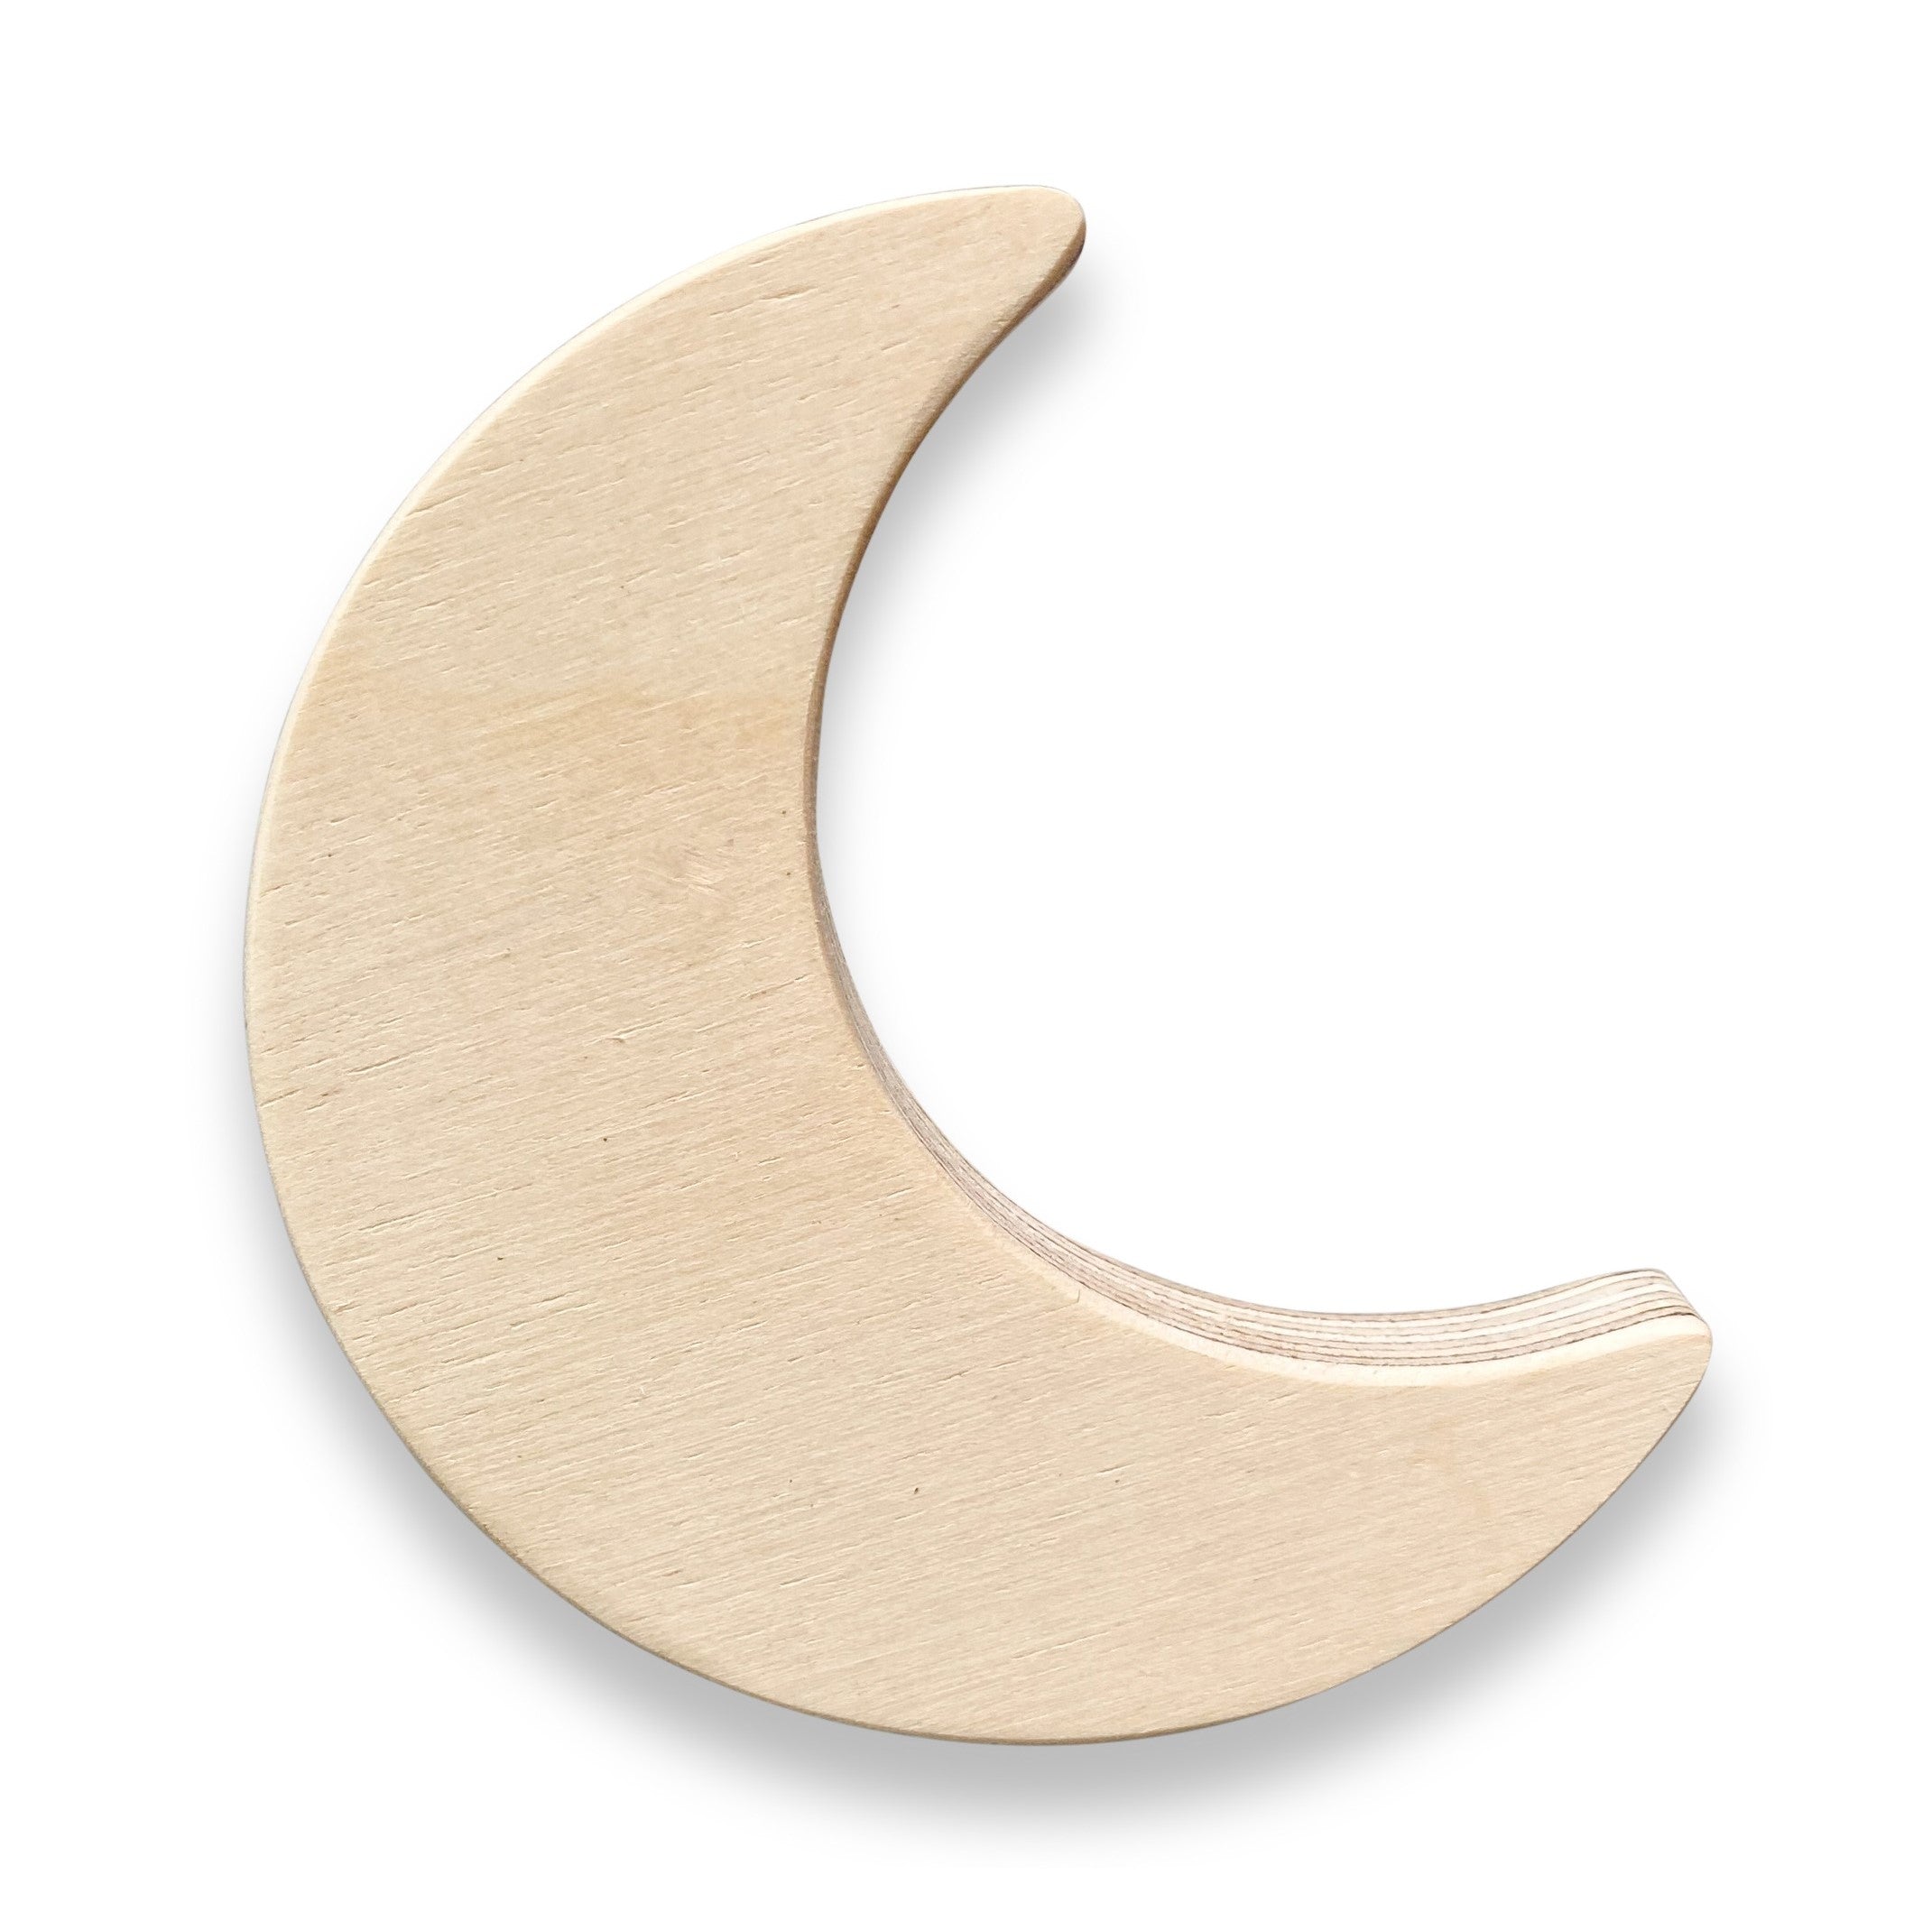 Drewniany wieszak ścienny do pokoju dziecięcego | Rakieta i księżyc